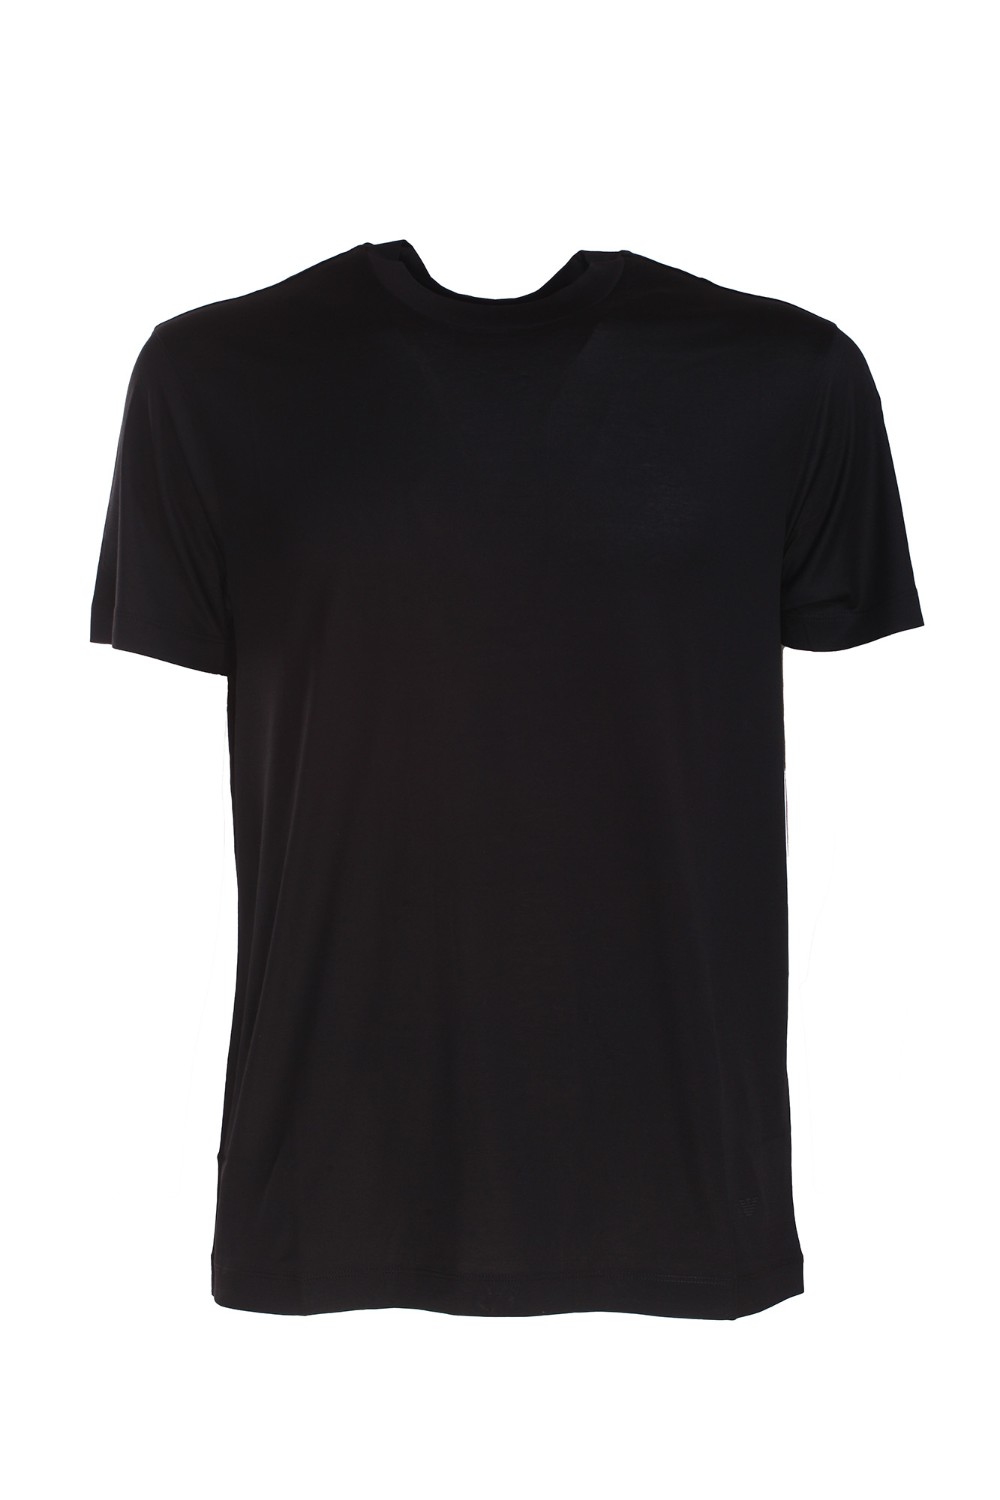 shop EMPORIO ARMANI  T-shirt: Emporio Armani t-shirt in cotone elasticizzato.
Scollo rotondo.
Maniche corte.
Composizione: 70% lyocell 30% cotone.
Fabbricato in Vietnam.. 8N1TE8 1JUVZ-0999 number 3686144